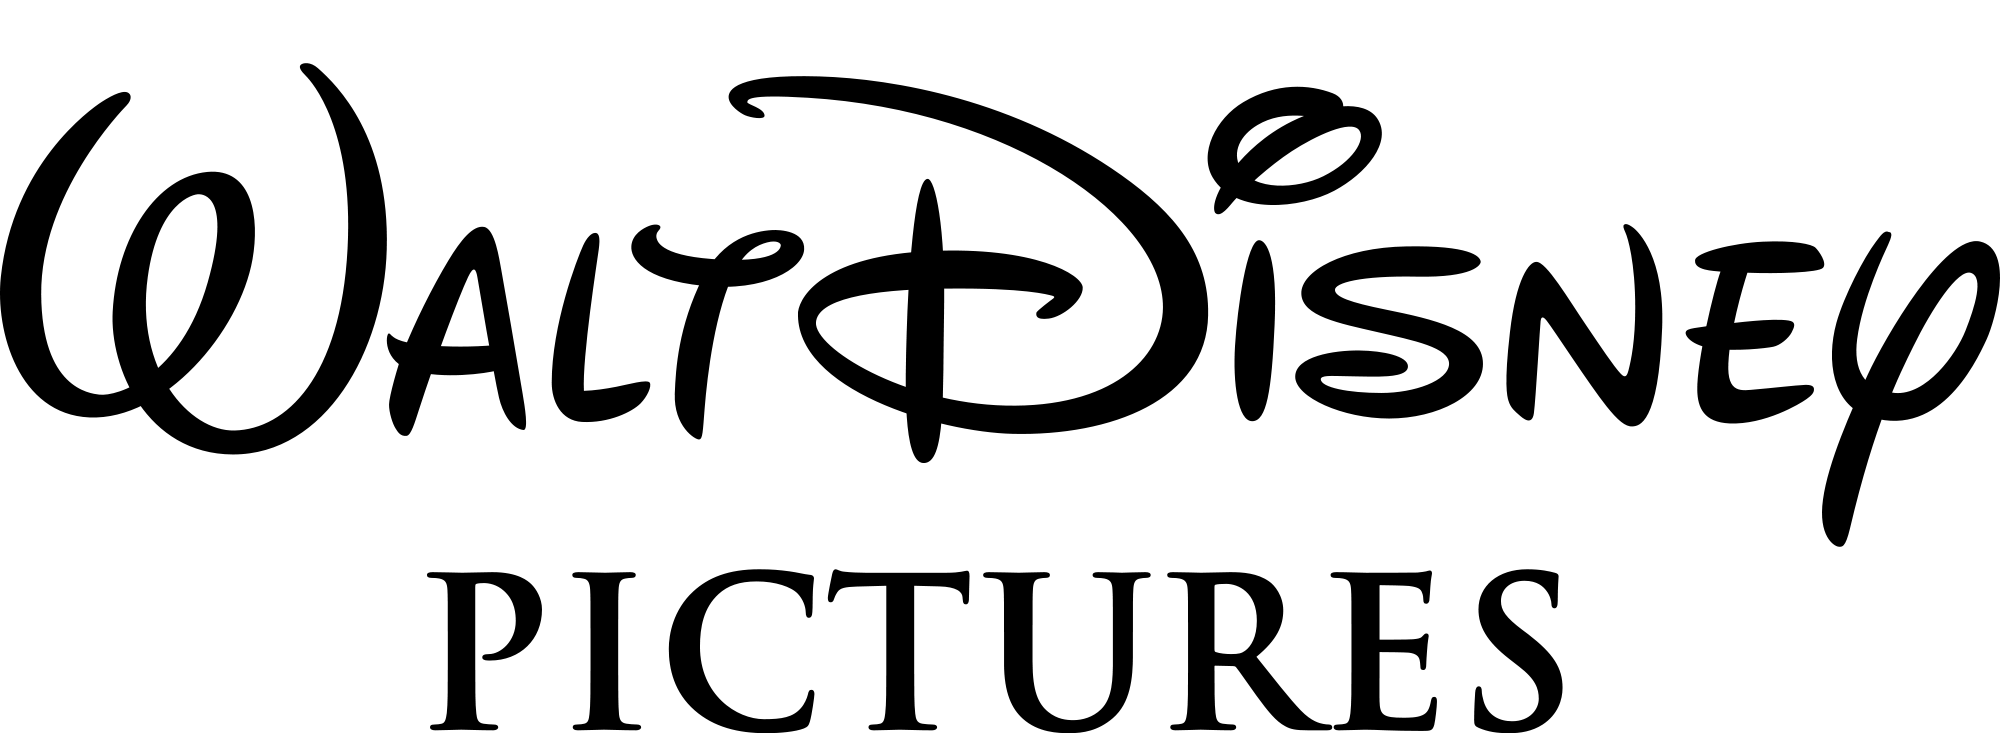 Immagine di Walt Disney Logo PNG Immagine Trasparente